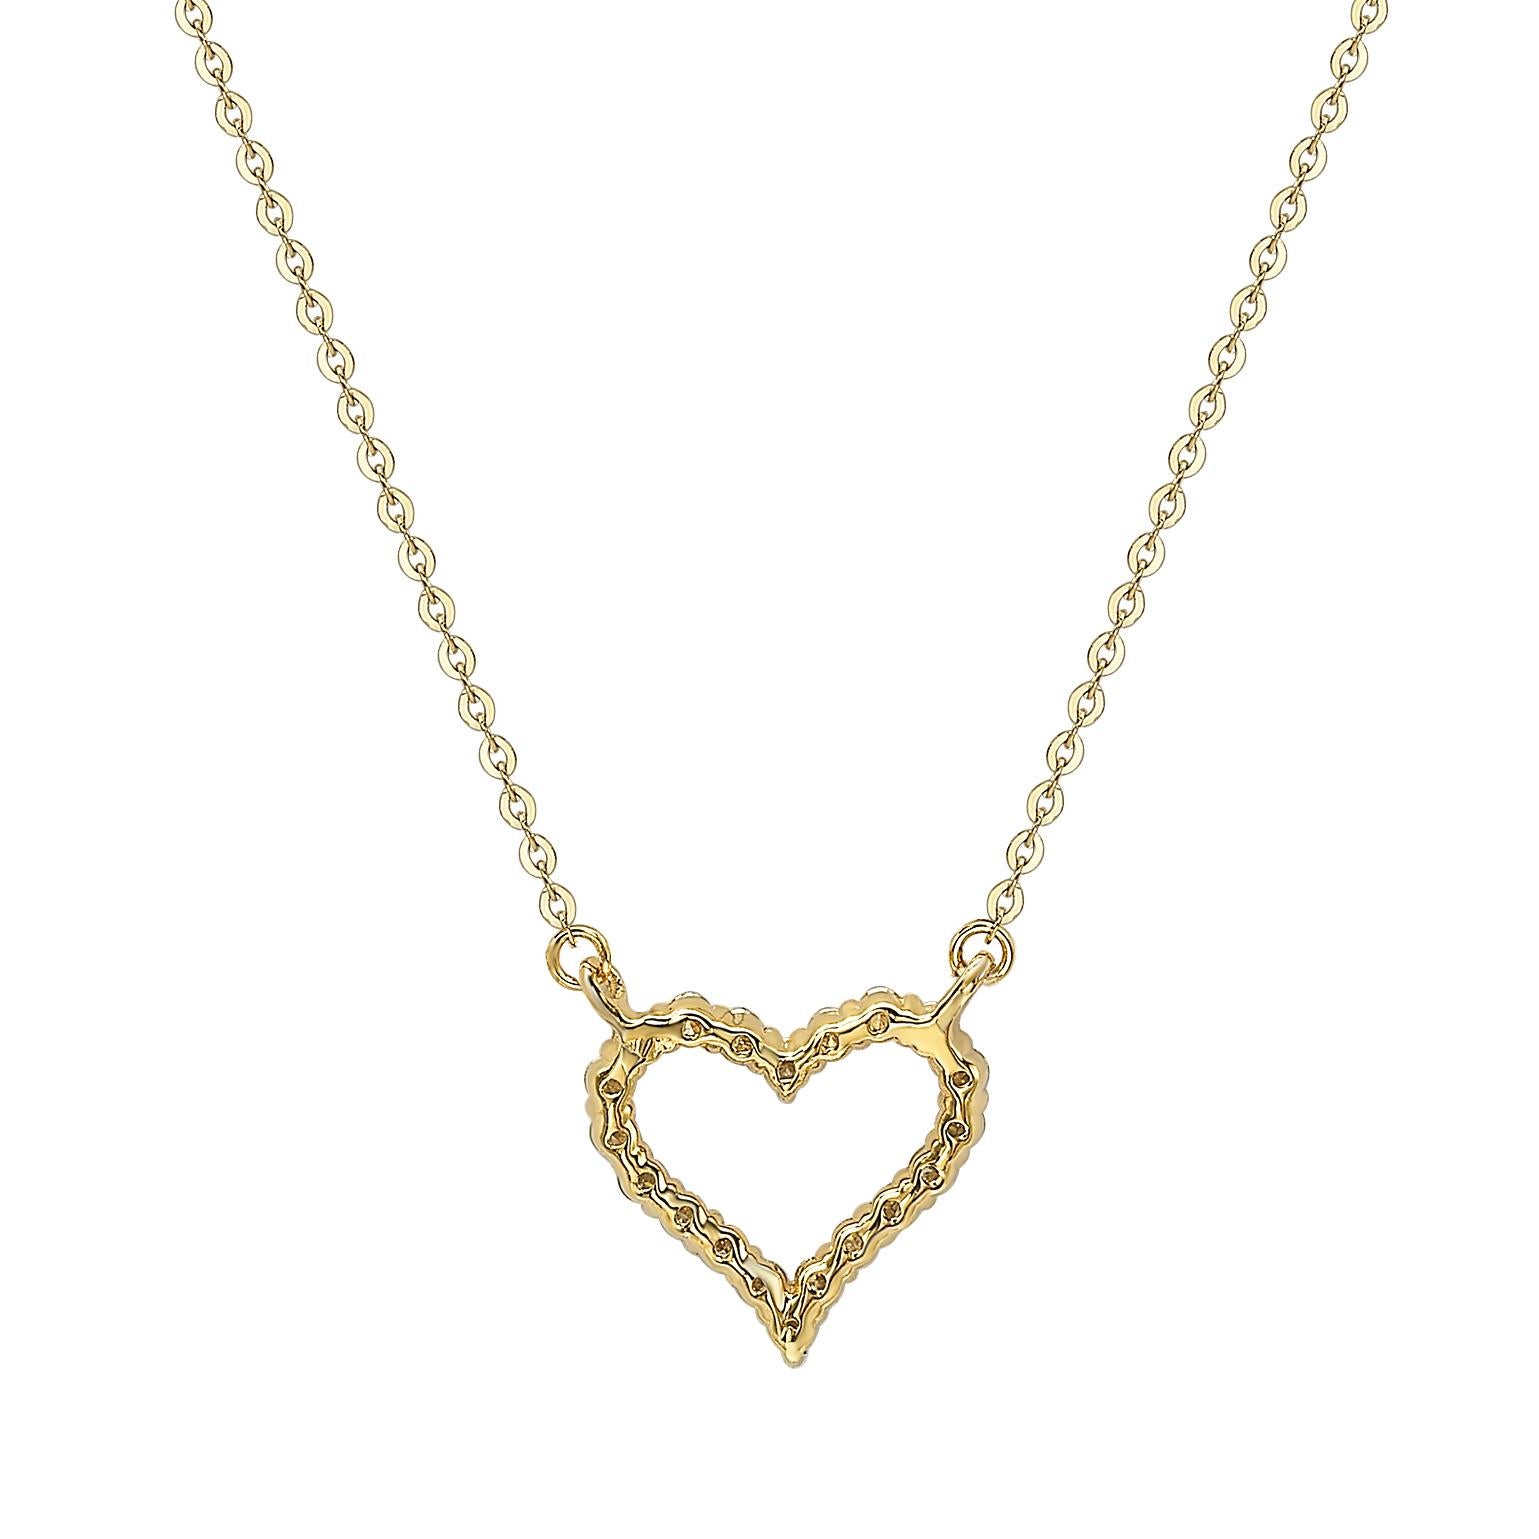 Cet époustouflant collier à cœur Suzy Levian est composé de diamants naturels, sertis à la main dans de l'or jaune 14 carats. C'est le cadeau idéal pour faire savoir à une personne chère que vous pensez à elle. Chaque collier en forme de cœur